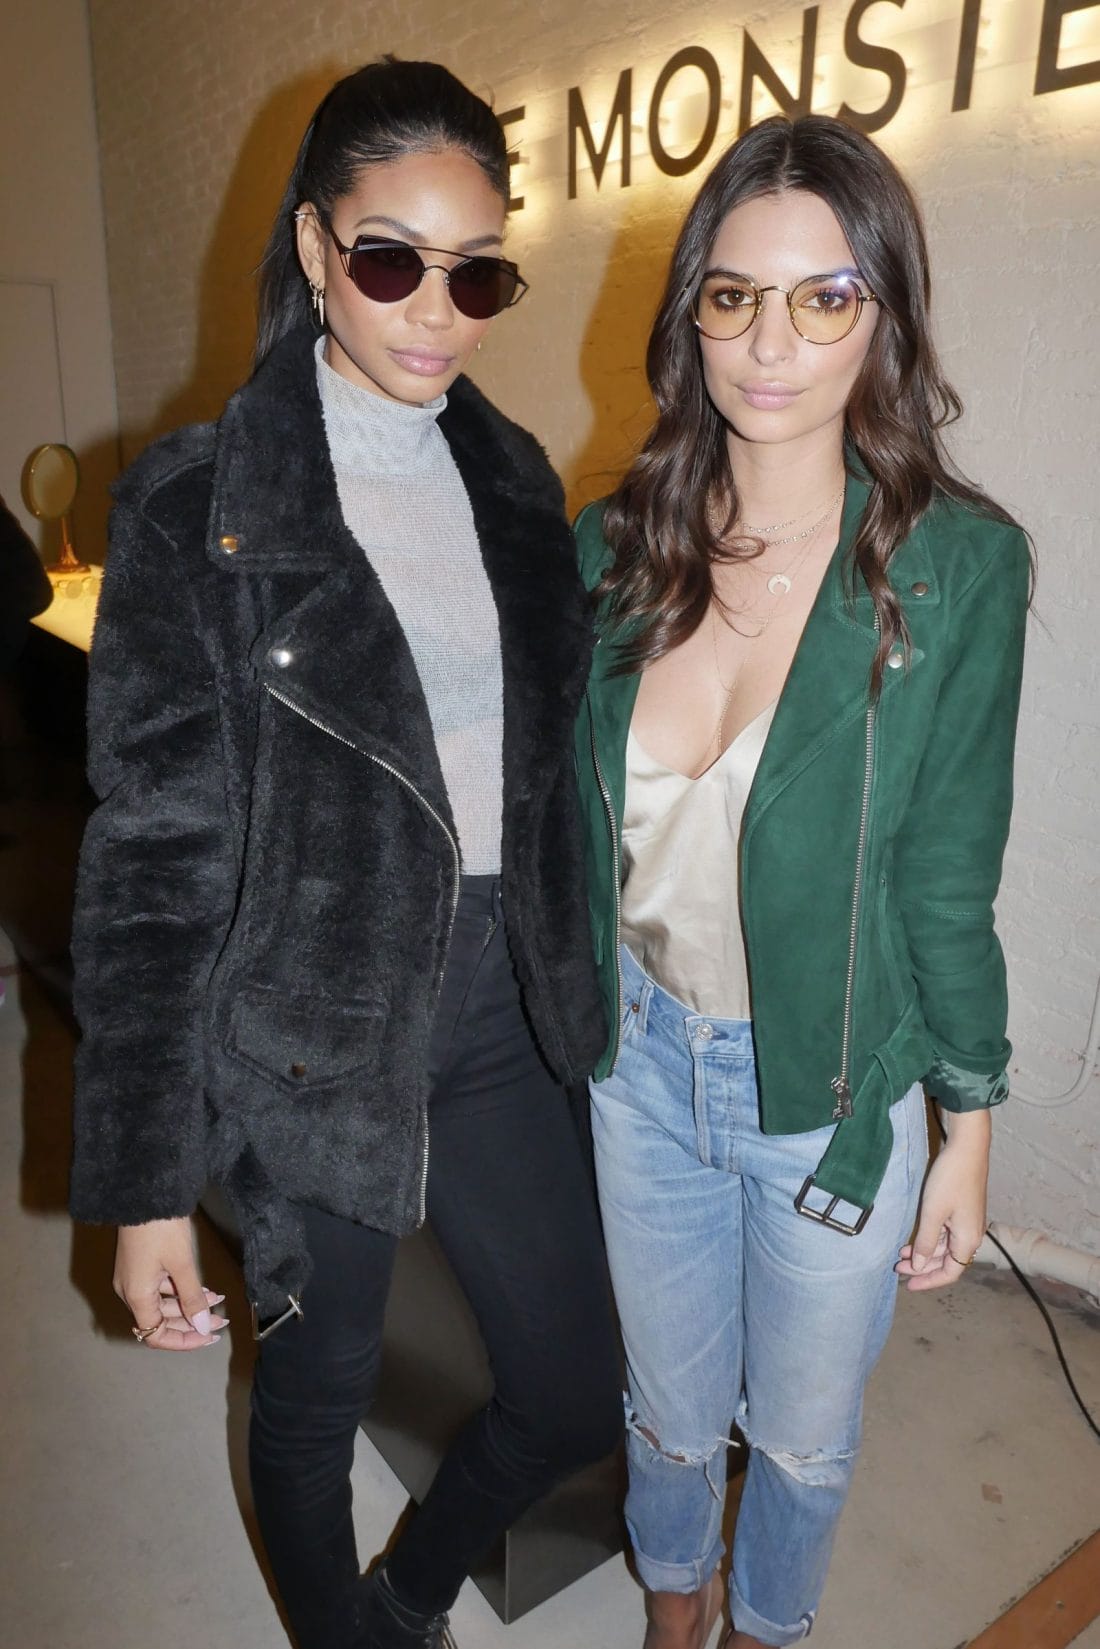 Chanel Iman and Emily Ratajkowski. Image: BFA/REX USA